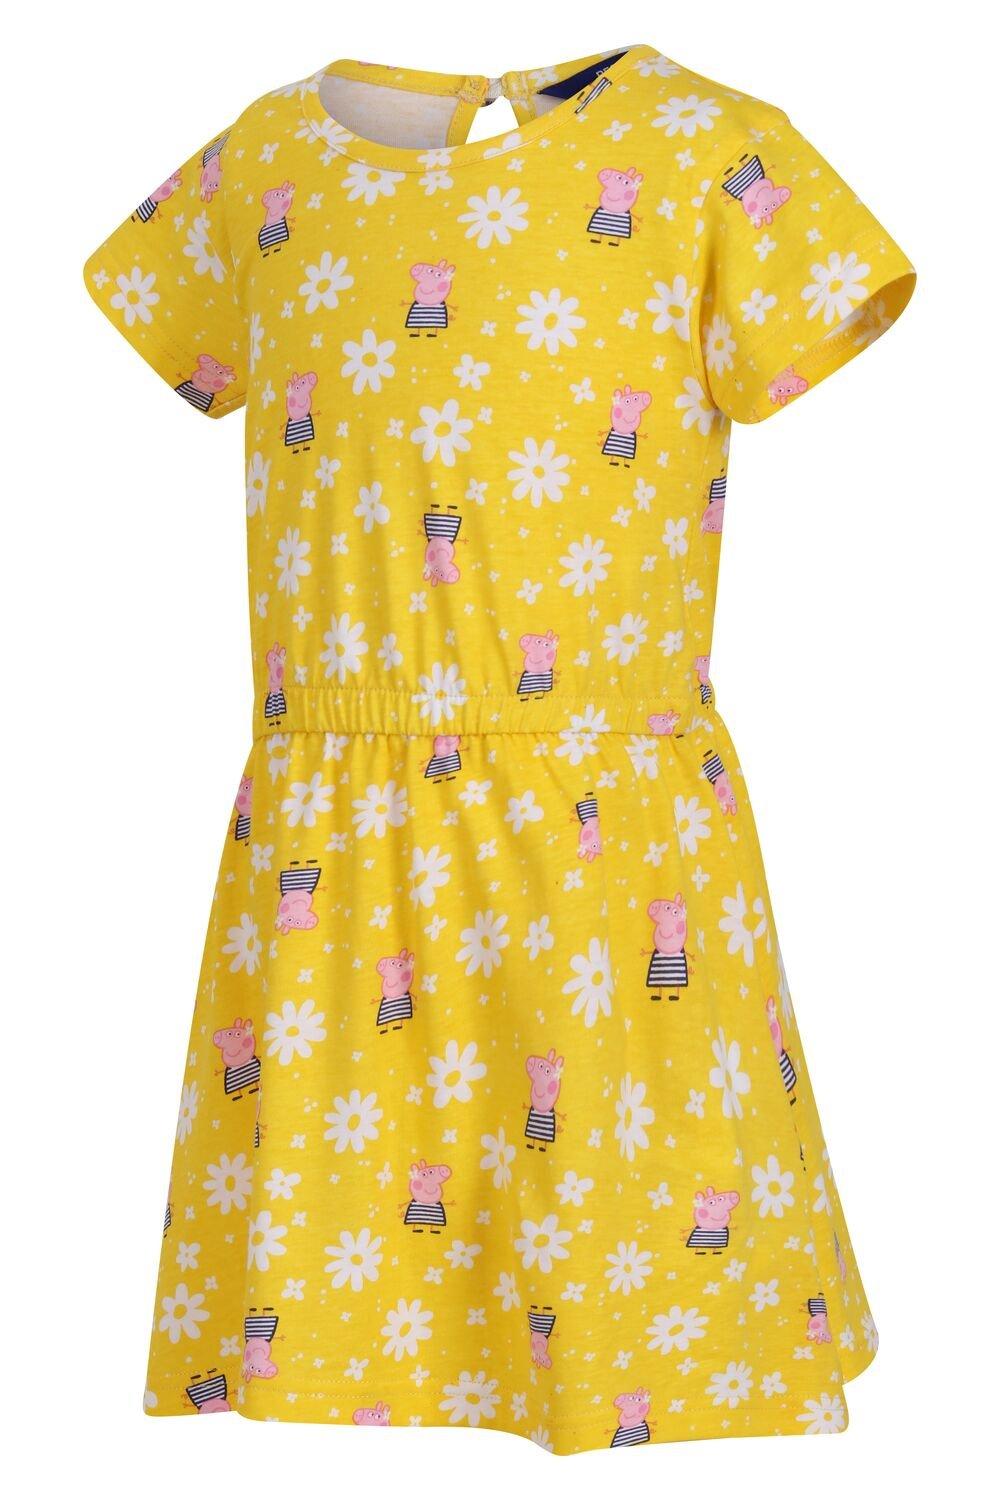 Платье из джерси Coolweave с короткими рукавами и надписью Свинка Пеппа Regatta, желтый платье летнее в цветах 44 размер